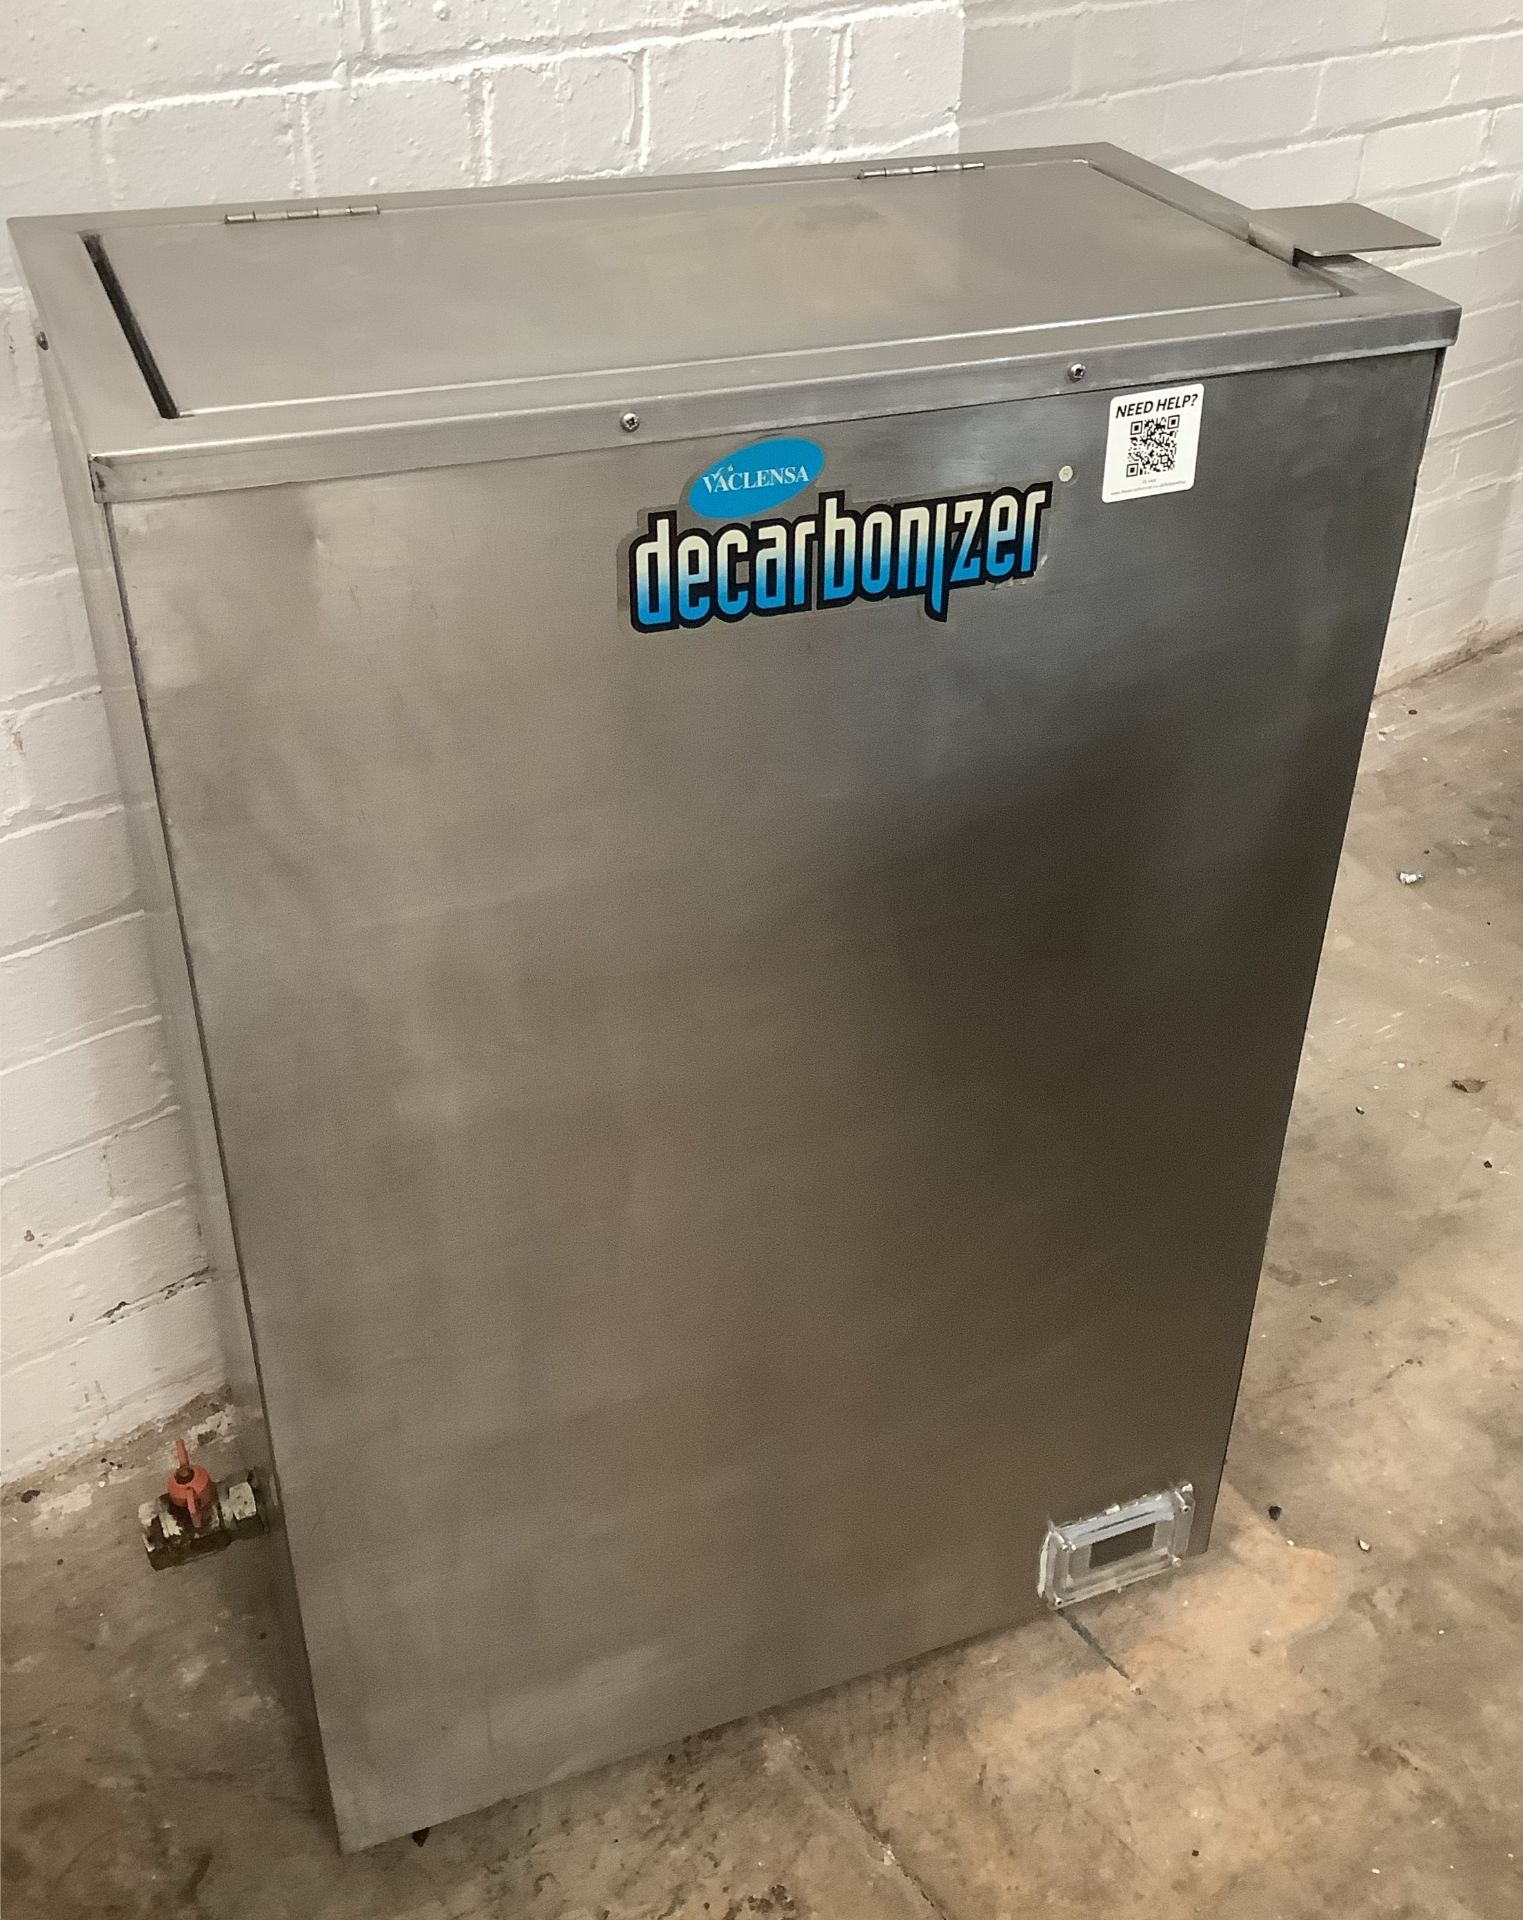 Decarbonizer - Image 2 of 2